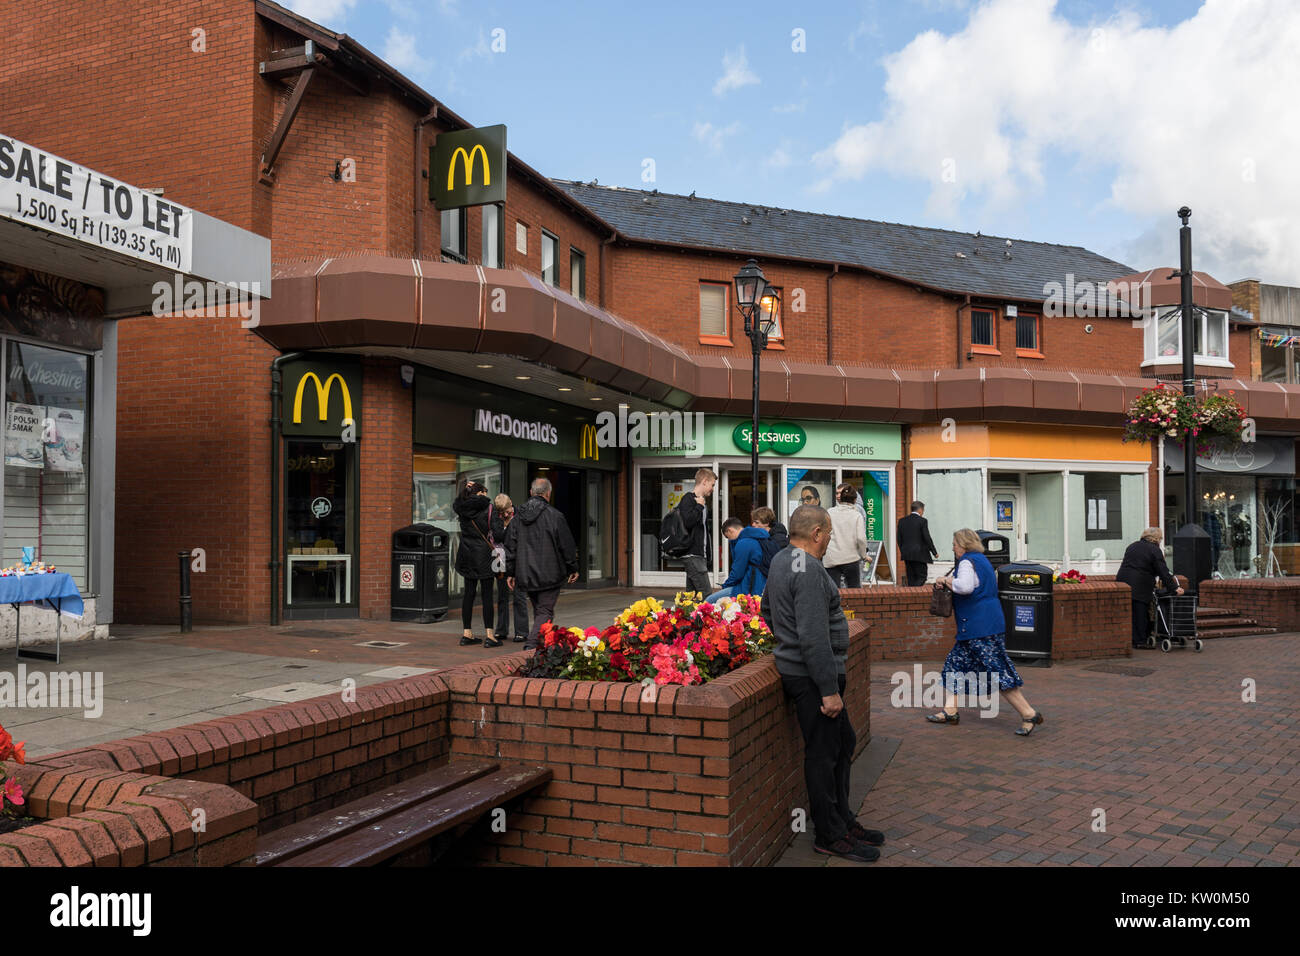 Mc Donald’s restaurant in Northwich, Cheshire, UK Stock Photo